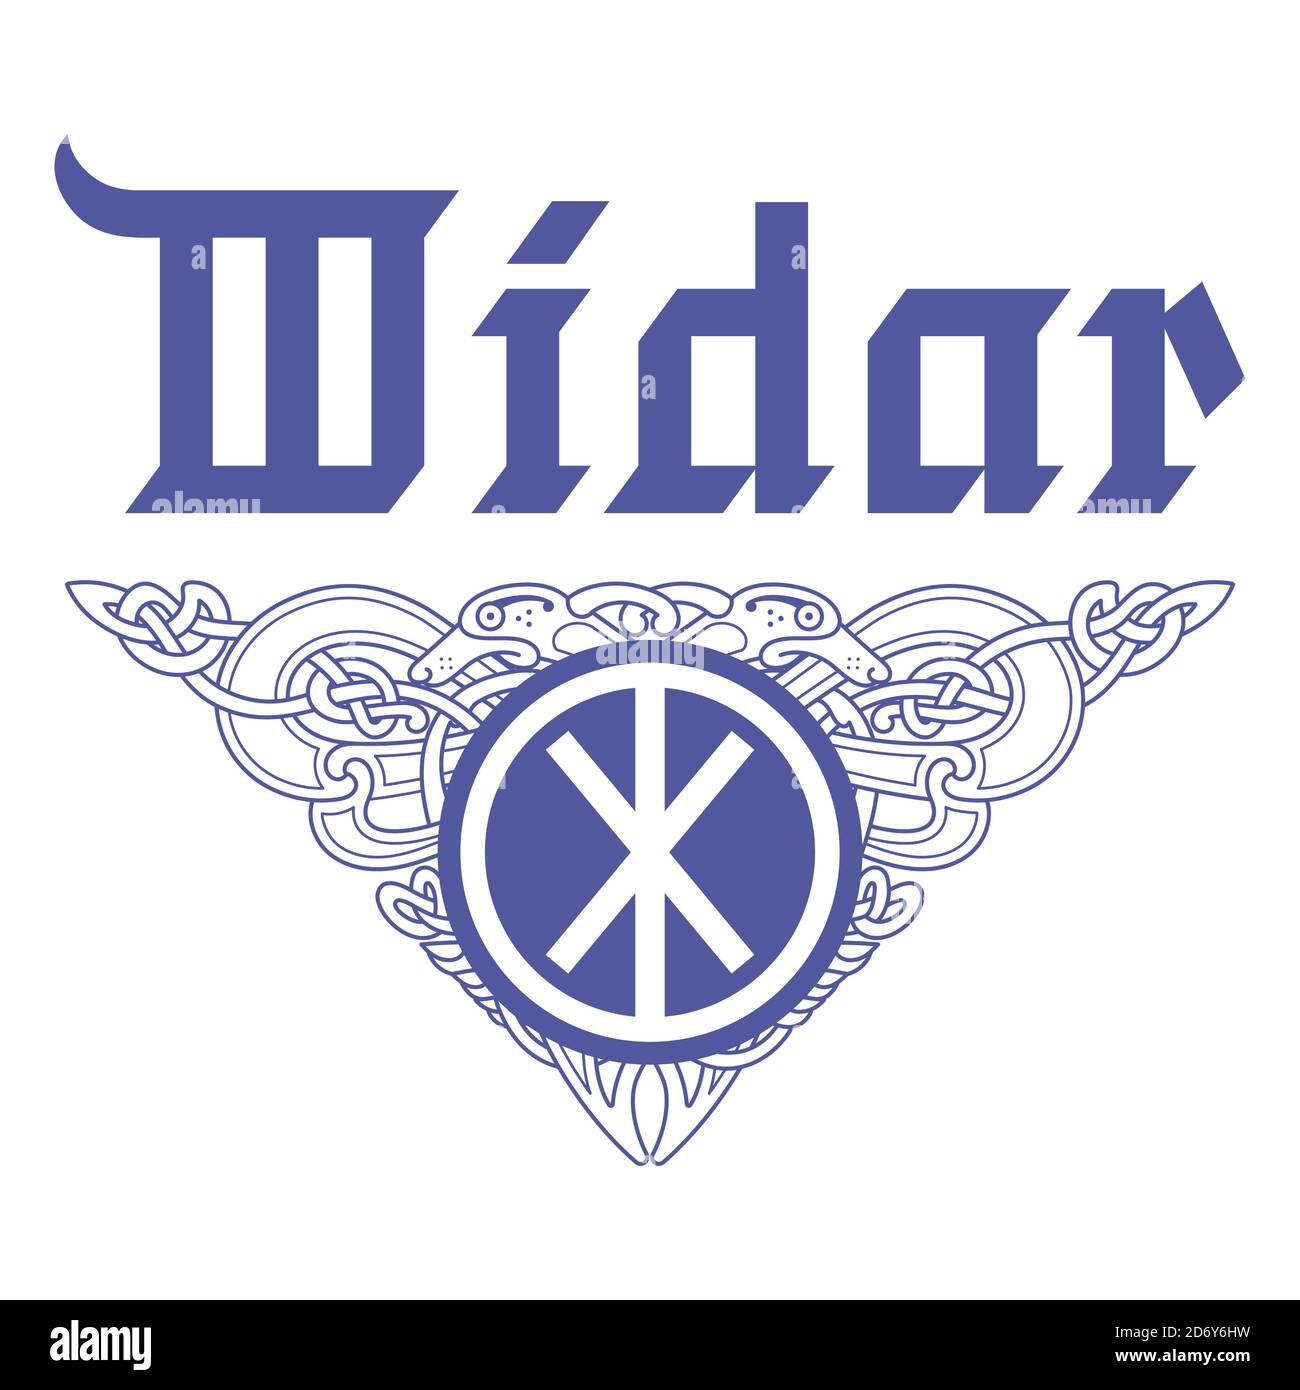 Viking, design. Vintage pattern e il nome del vecchio dio norreno Vidar scritto in stile gotico. Illustrazione in stile Celtico scandinavo. Illustrazione Vettoriale